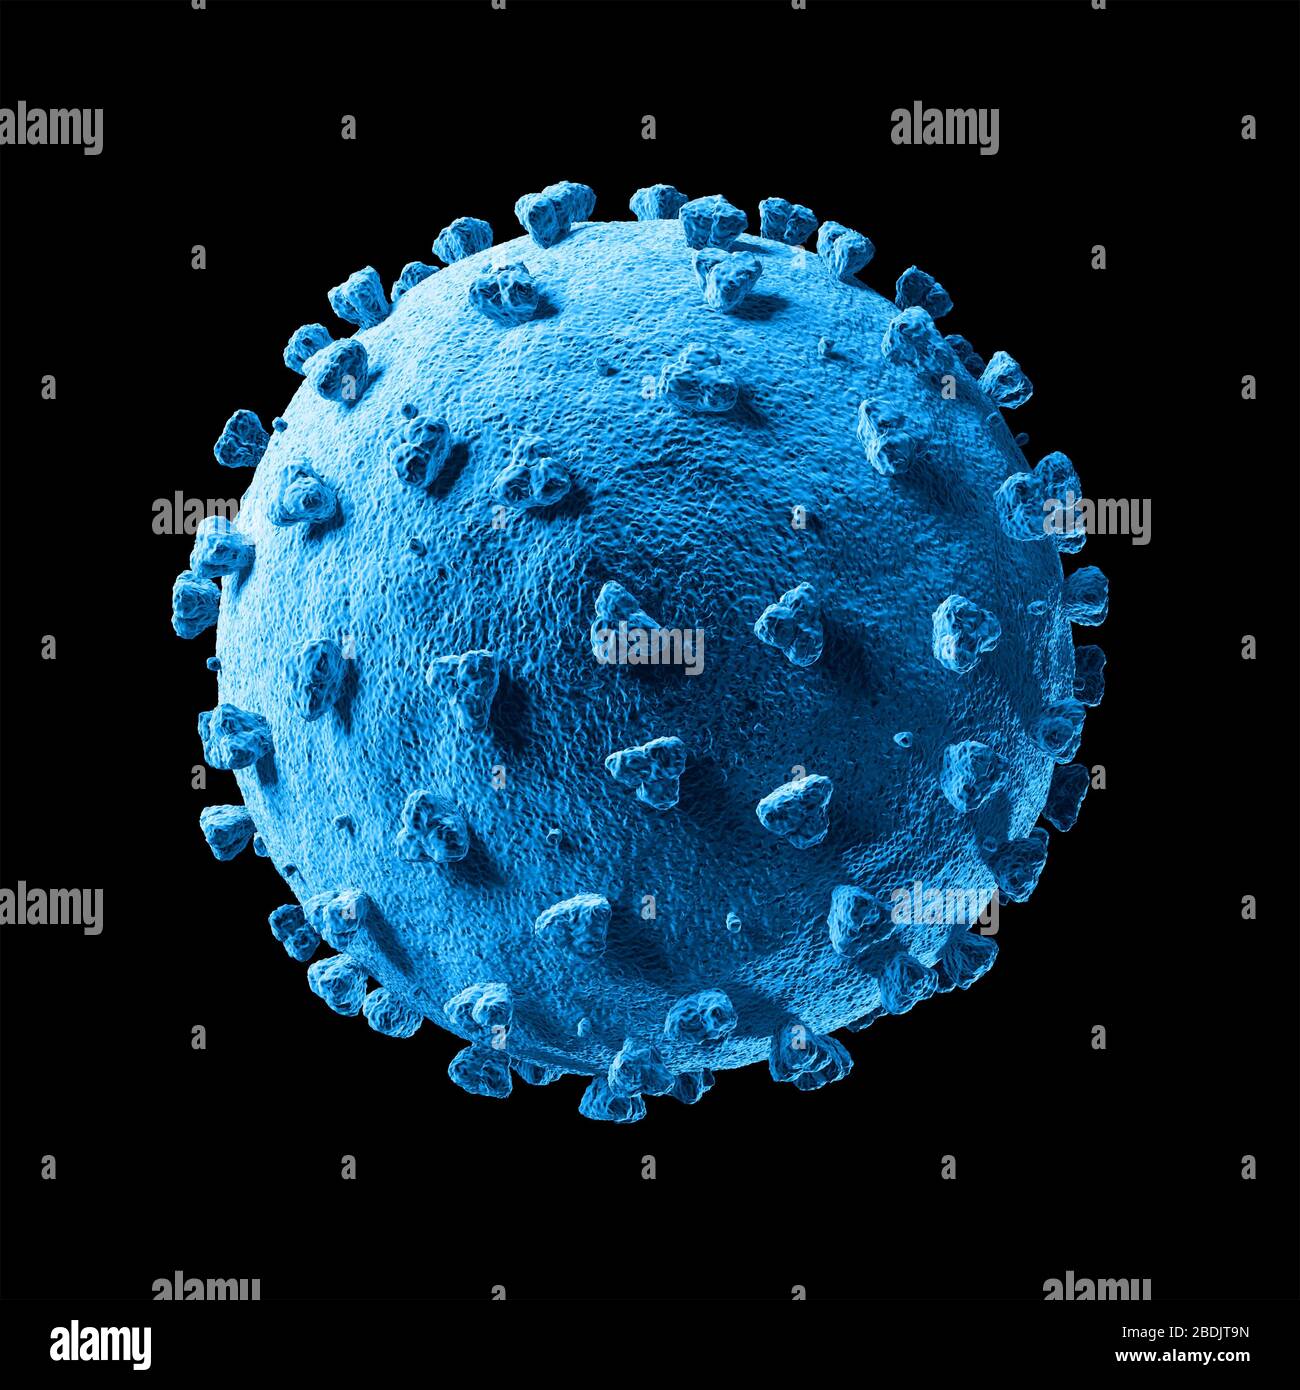 SRAS-COV-2. Pandémie. COVID-19. Maladie du coronavirus. 2019-2020. illustration tridimensionnelle. Banque D'Images